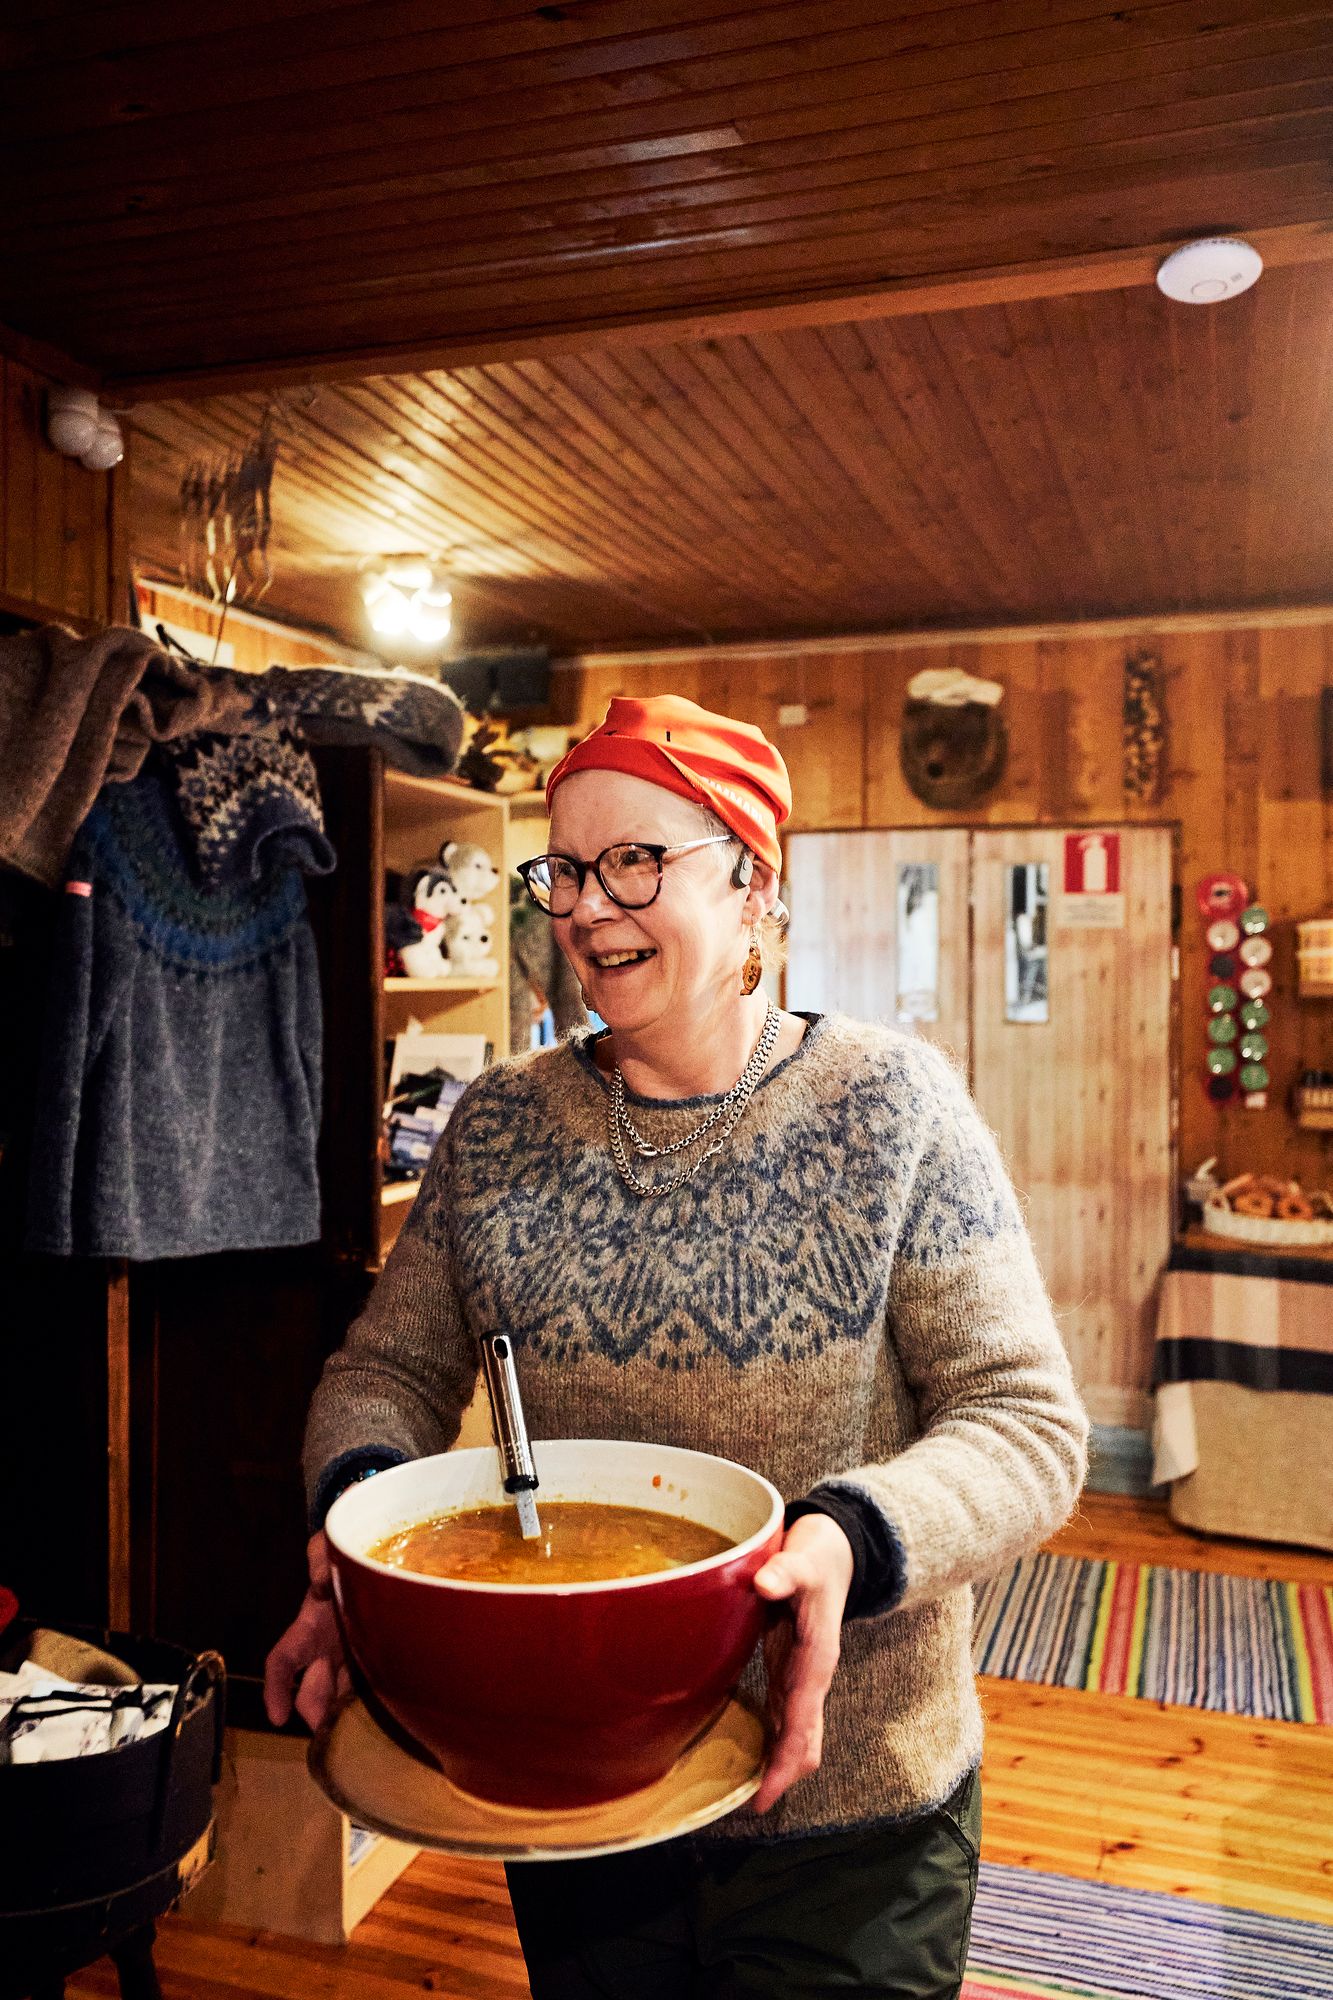 ”Tämä oli hillittömän hauska tapahtuma ja oli hyväntuulista porukkaa”, toteaa hiihtäjille keittoa tarjoillut yrittäjä Pirjo Niinimäki. © Sara Pihlaja